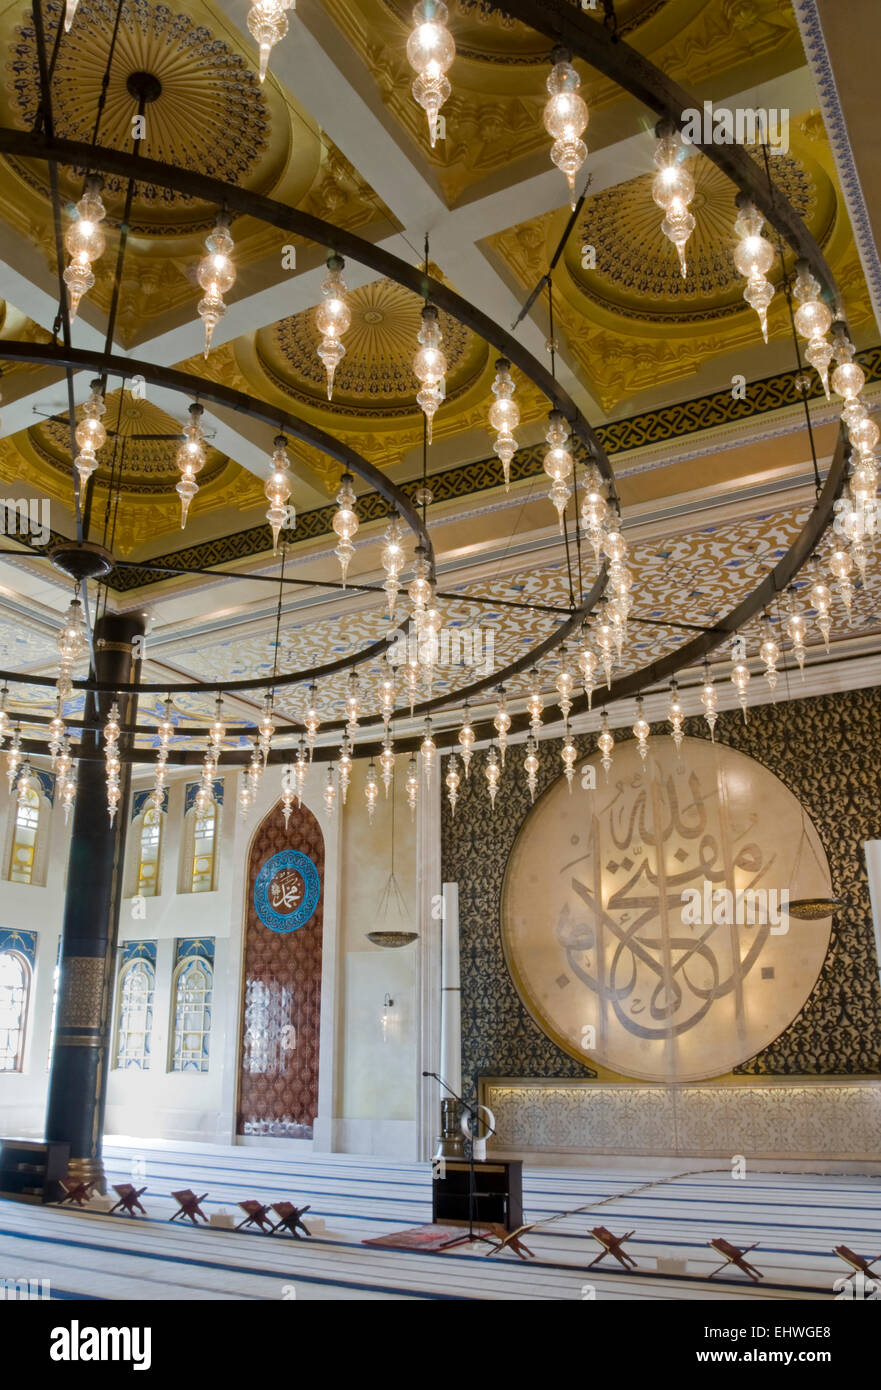 Mosquée Bleue, Katara Cultural Village, Doha. Le Qatar. Moyen Orient. Banque D'Images